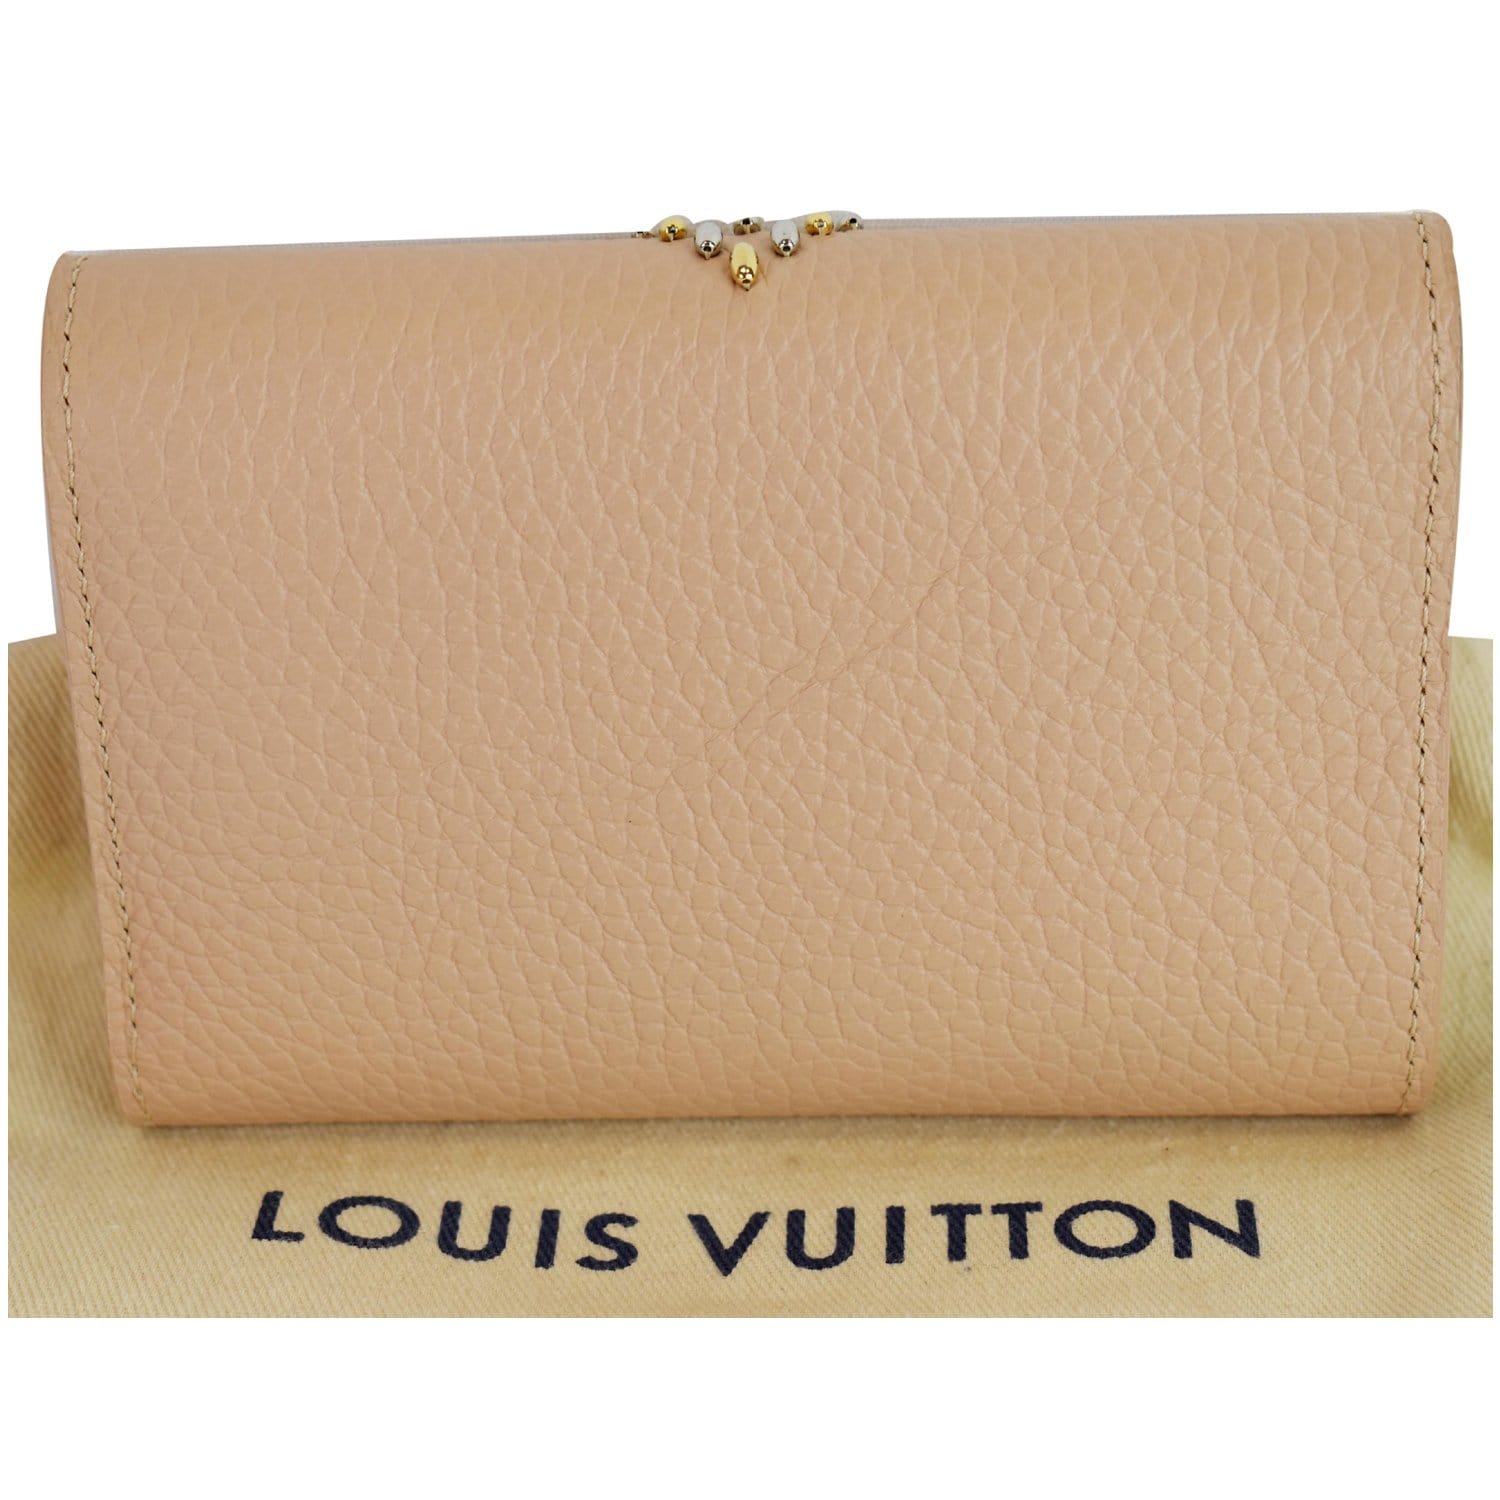 Authentic Louis Vuitton Capucines Wallet